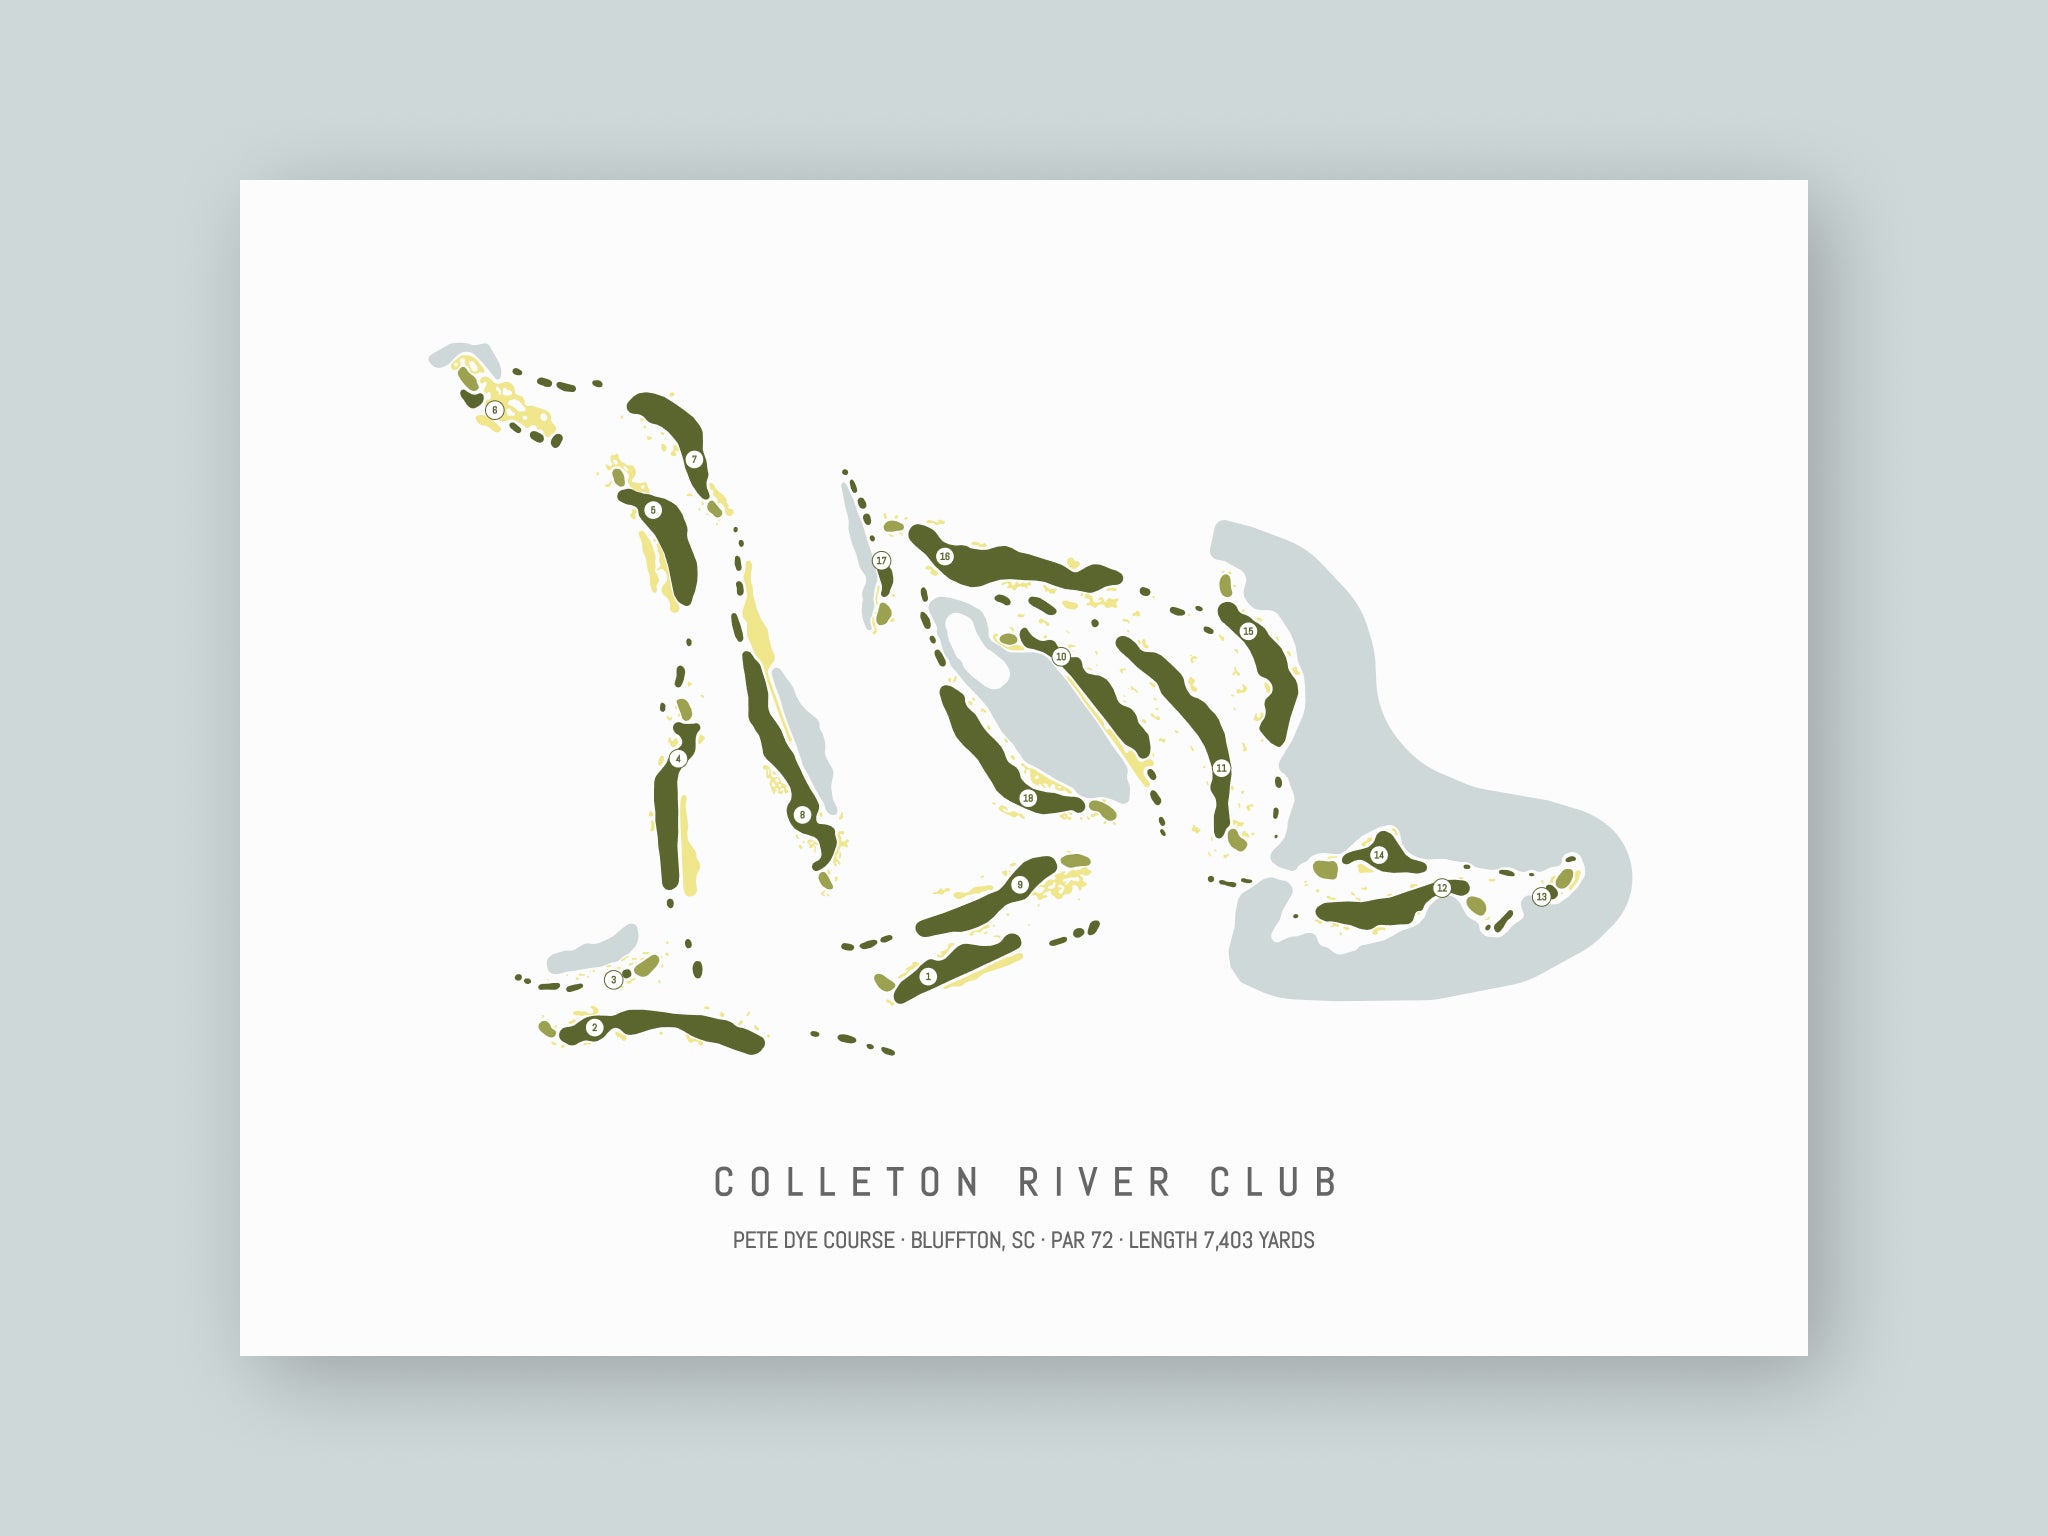 Colleton River Club - Pete Dye Course